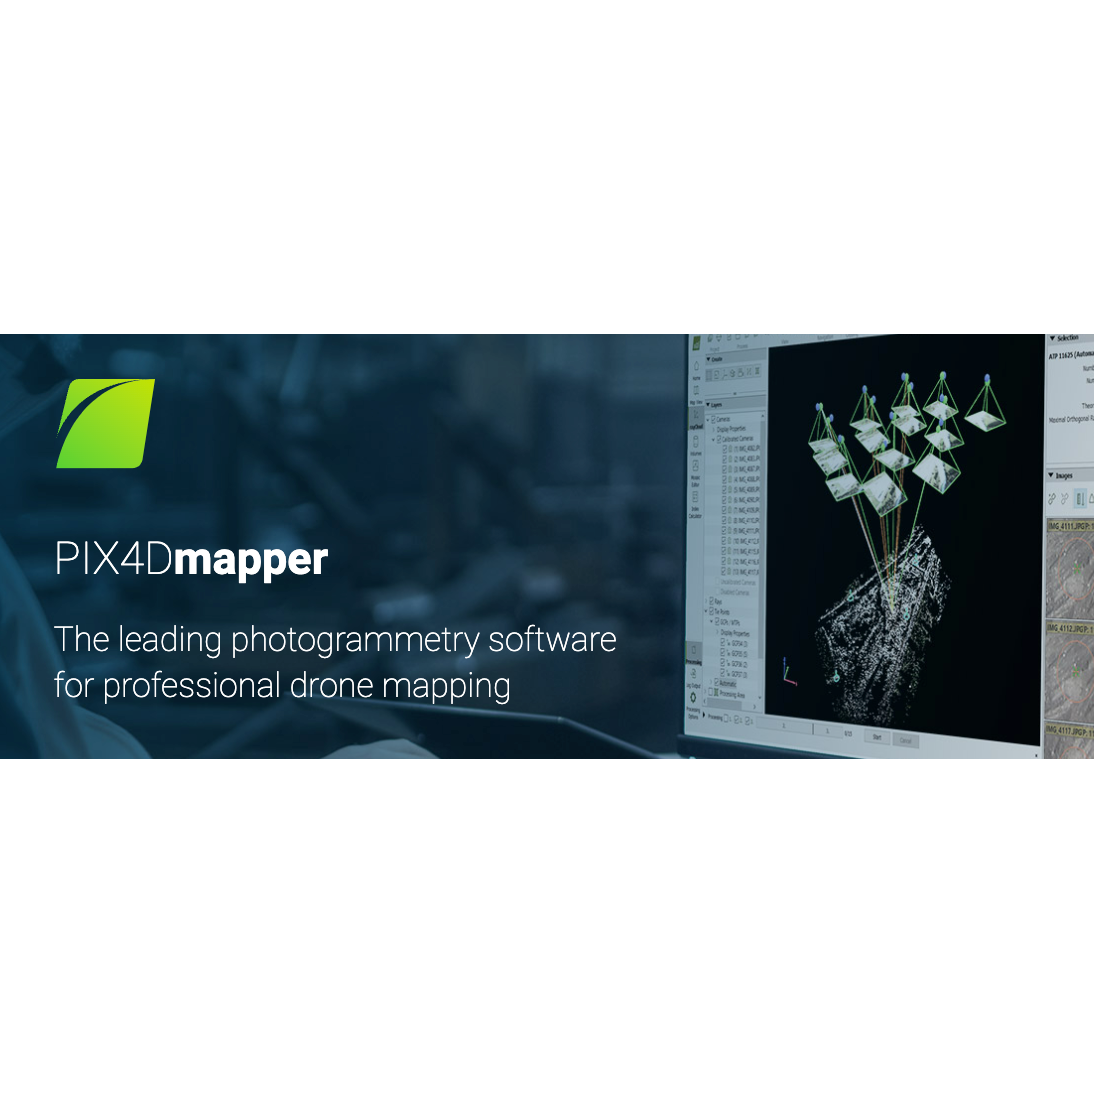 PIX4Dmapper photogrammetry software